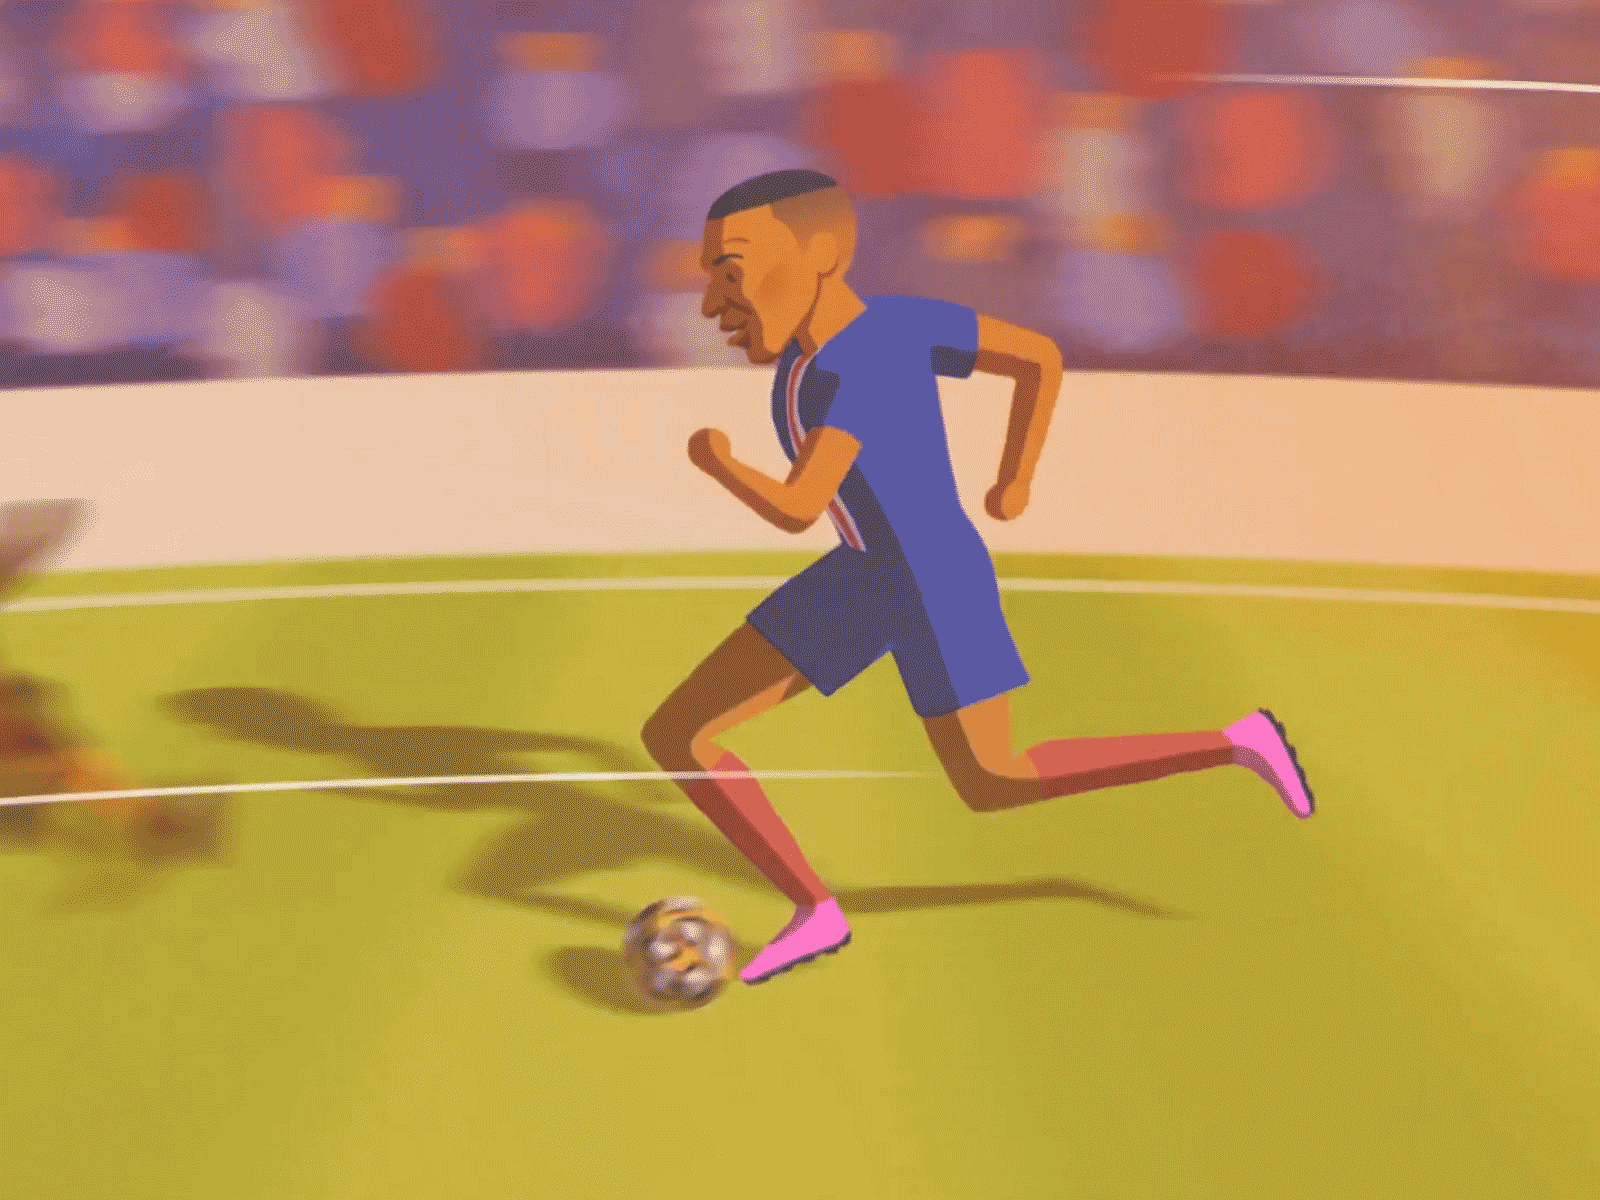 MBappé Run football illustration mbappe motion parcdesprinces paris psg soccer sport stadium